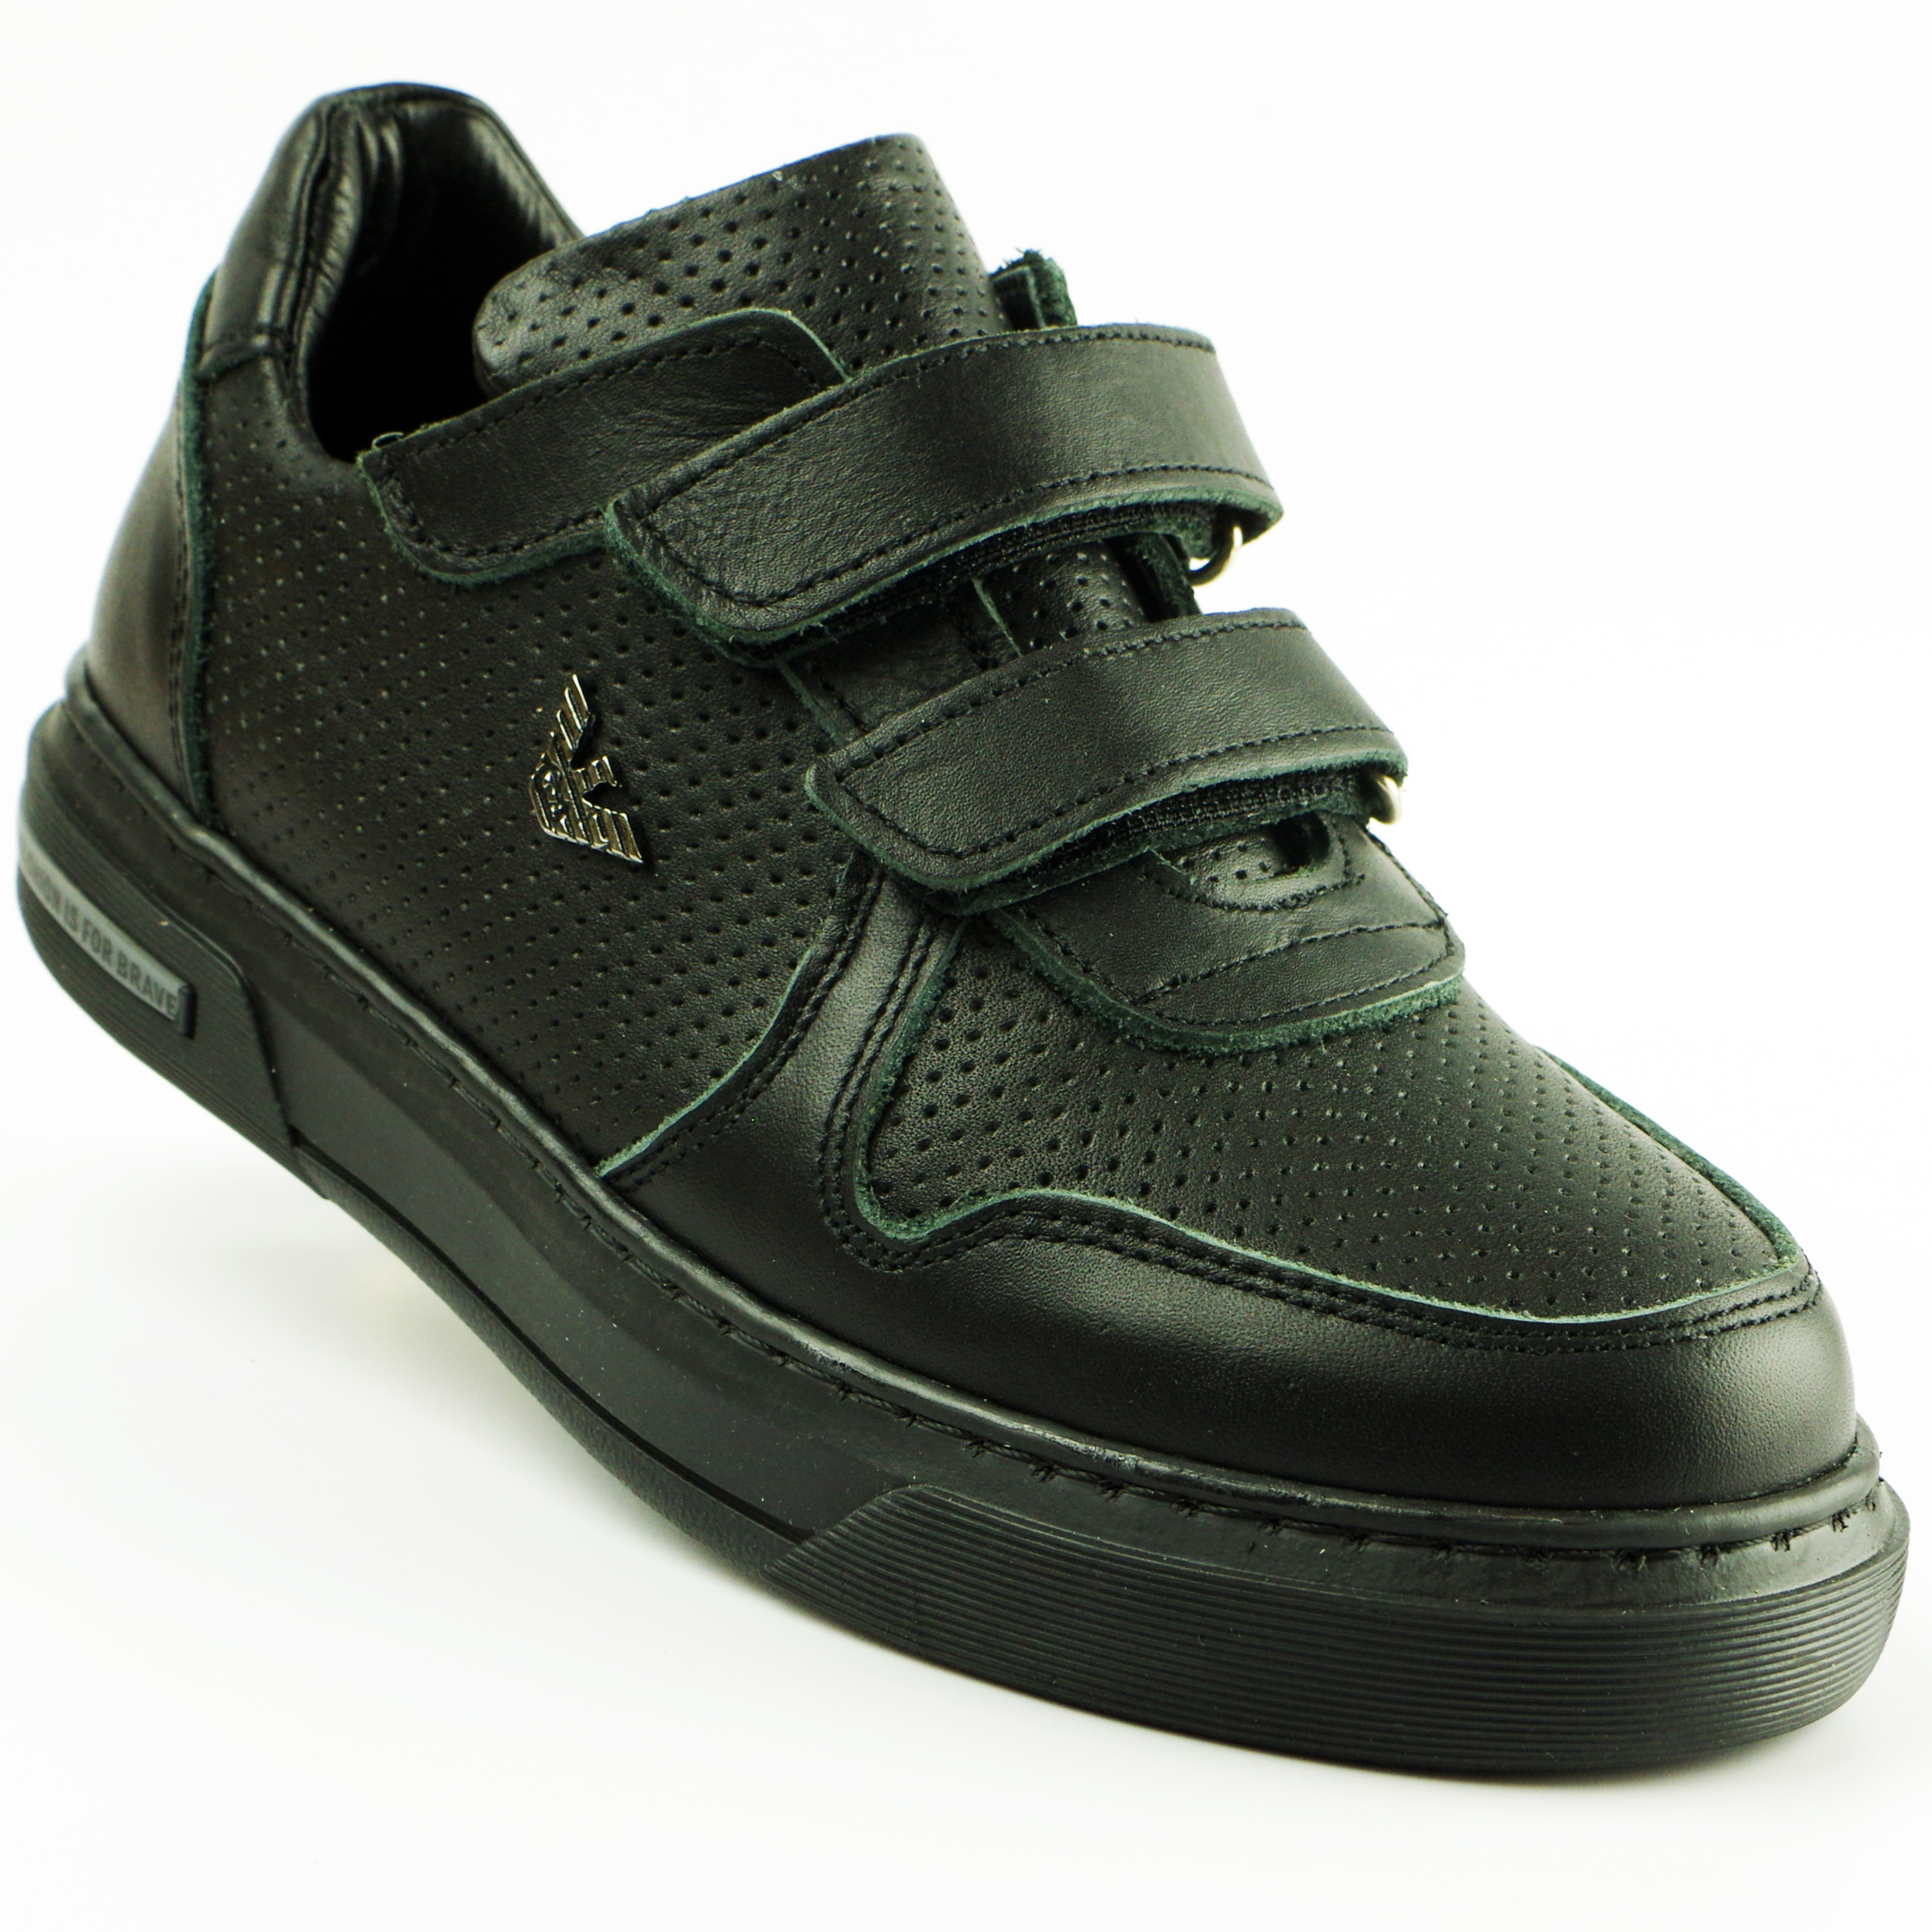 Туфли детские (2119) материал Натуральная кожа, цвет Черный  для мальчиков 31-36 размеры – Sole Kids